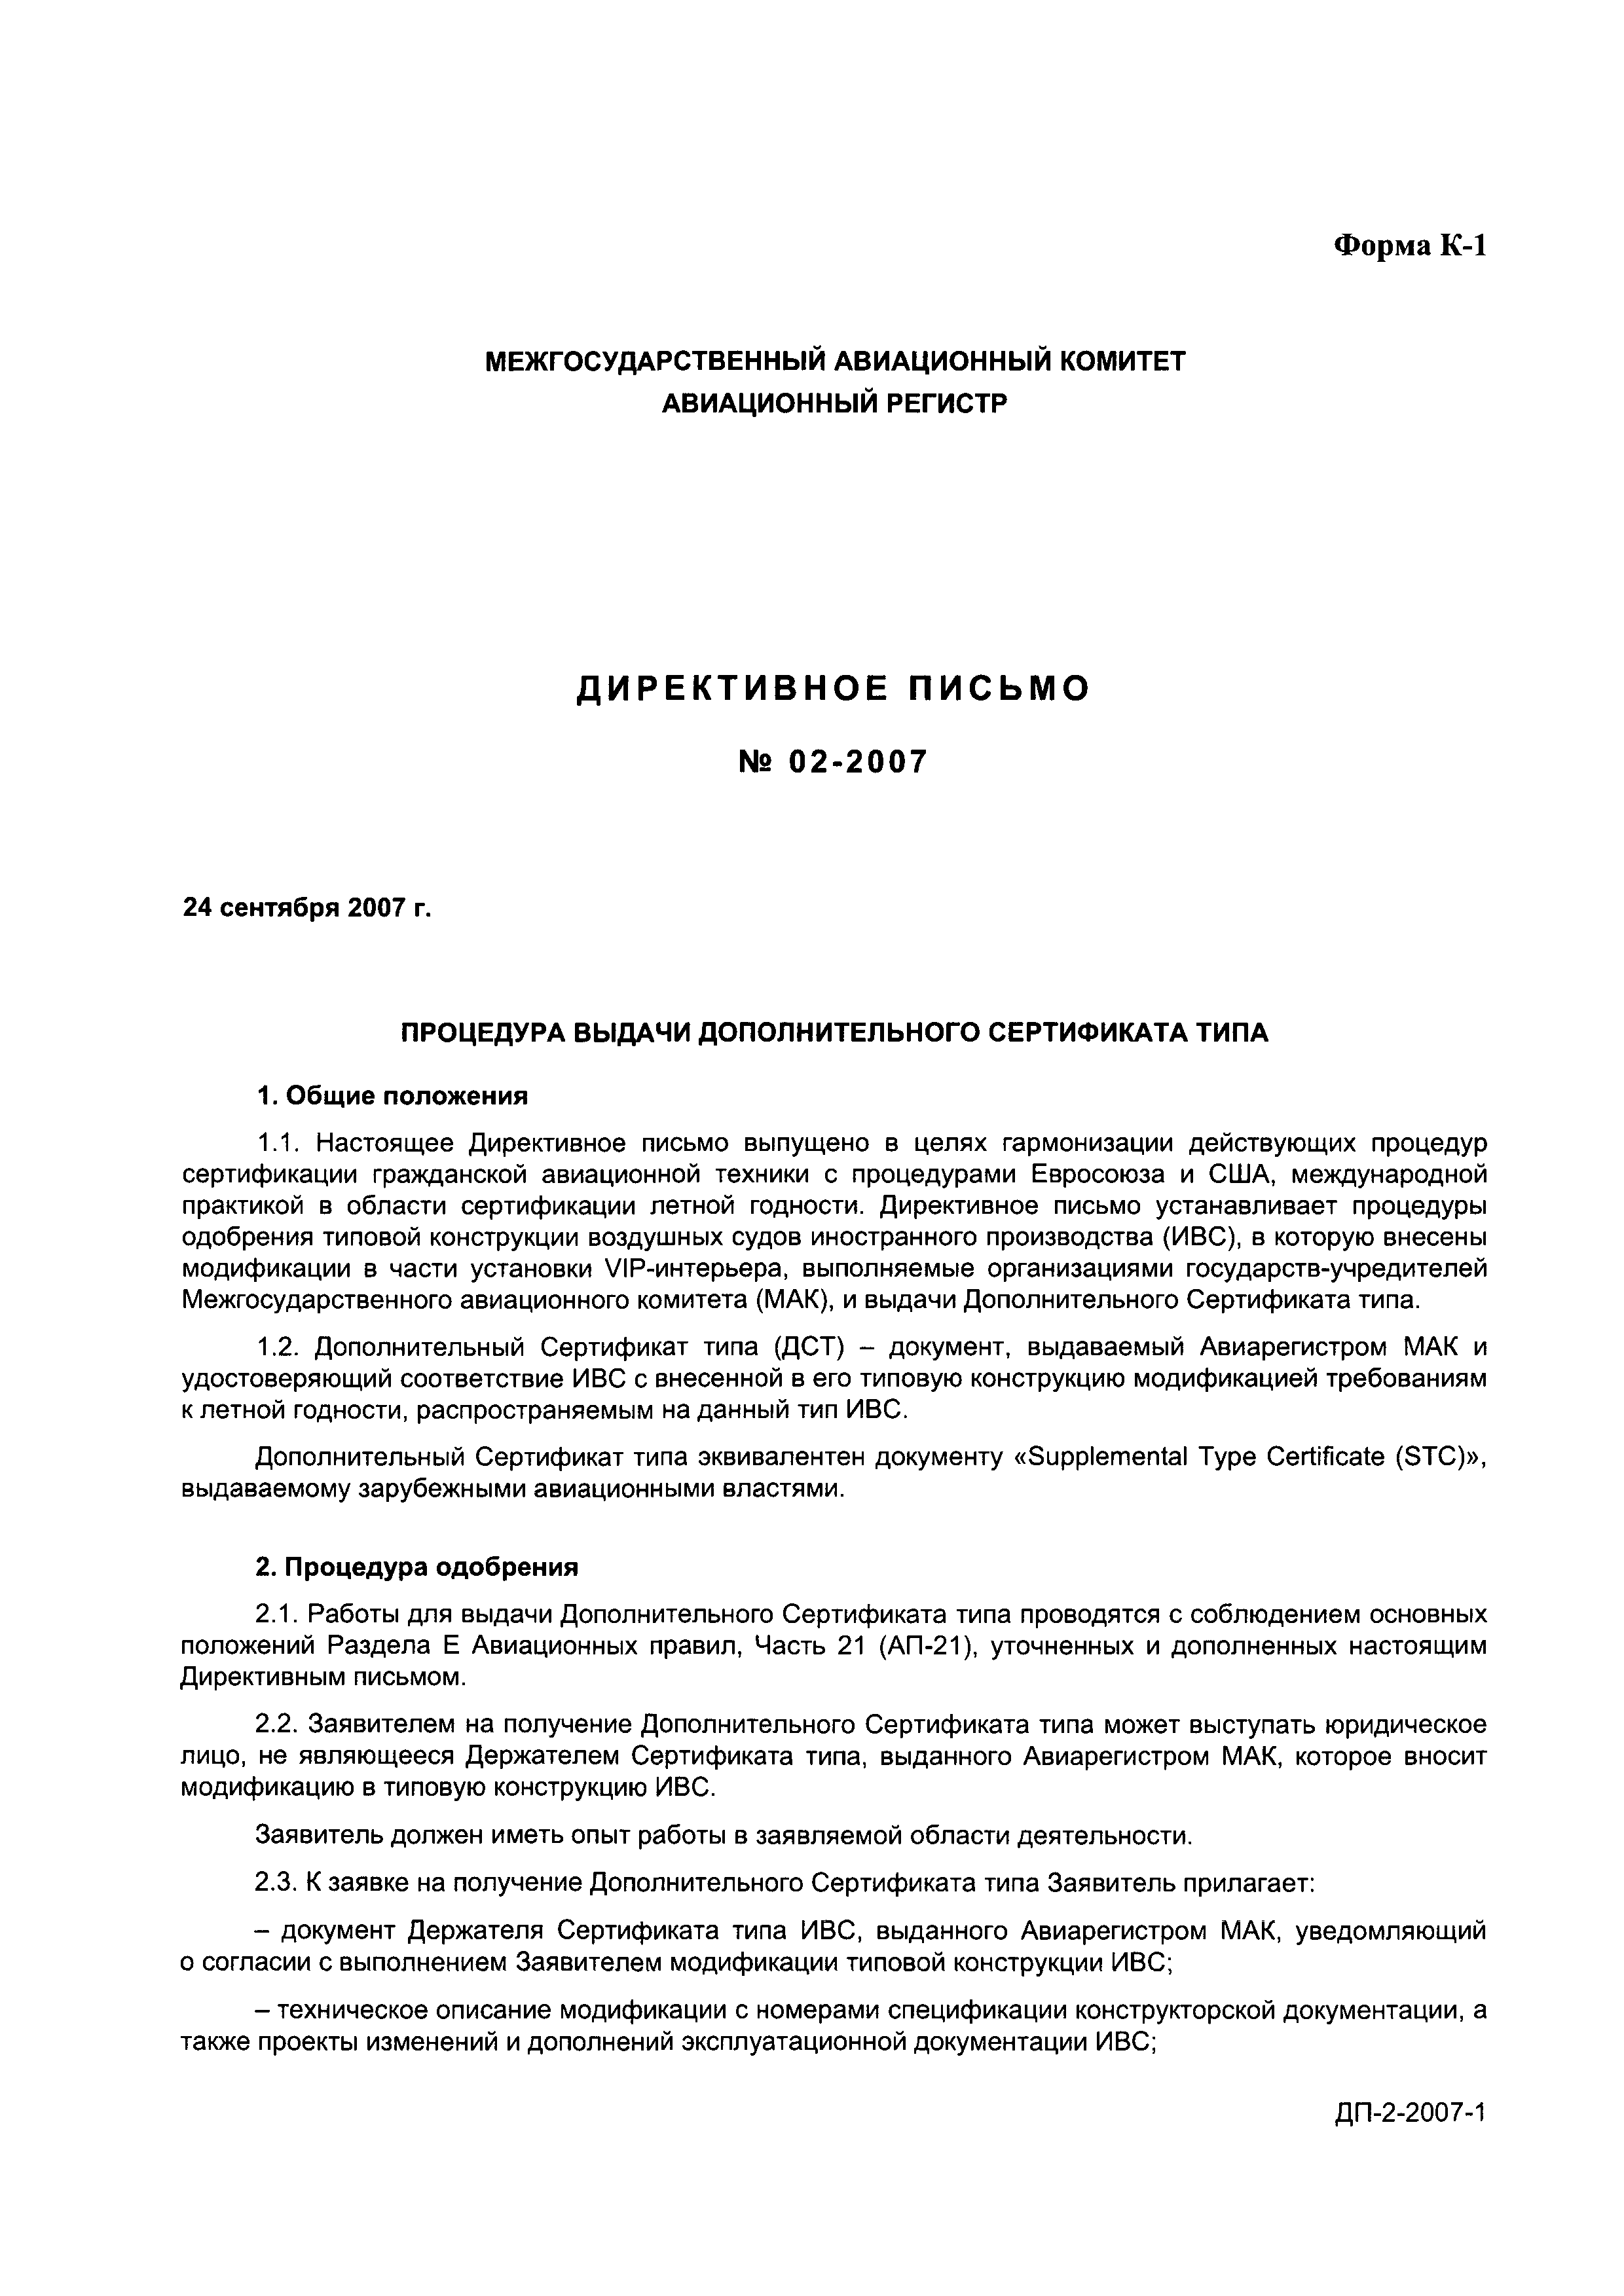 Директивное письмо 02-2007